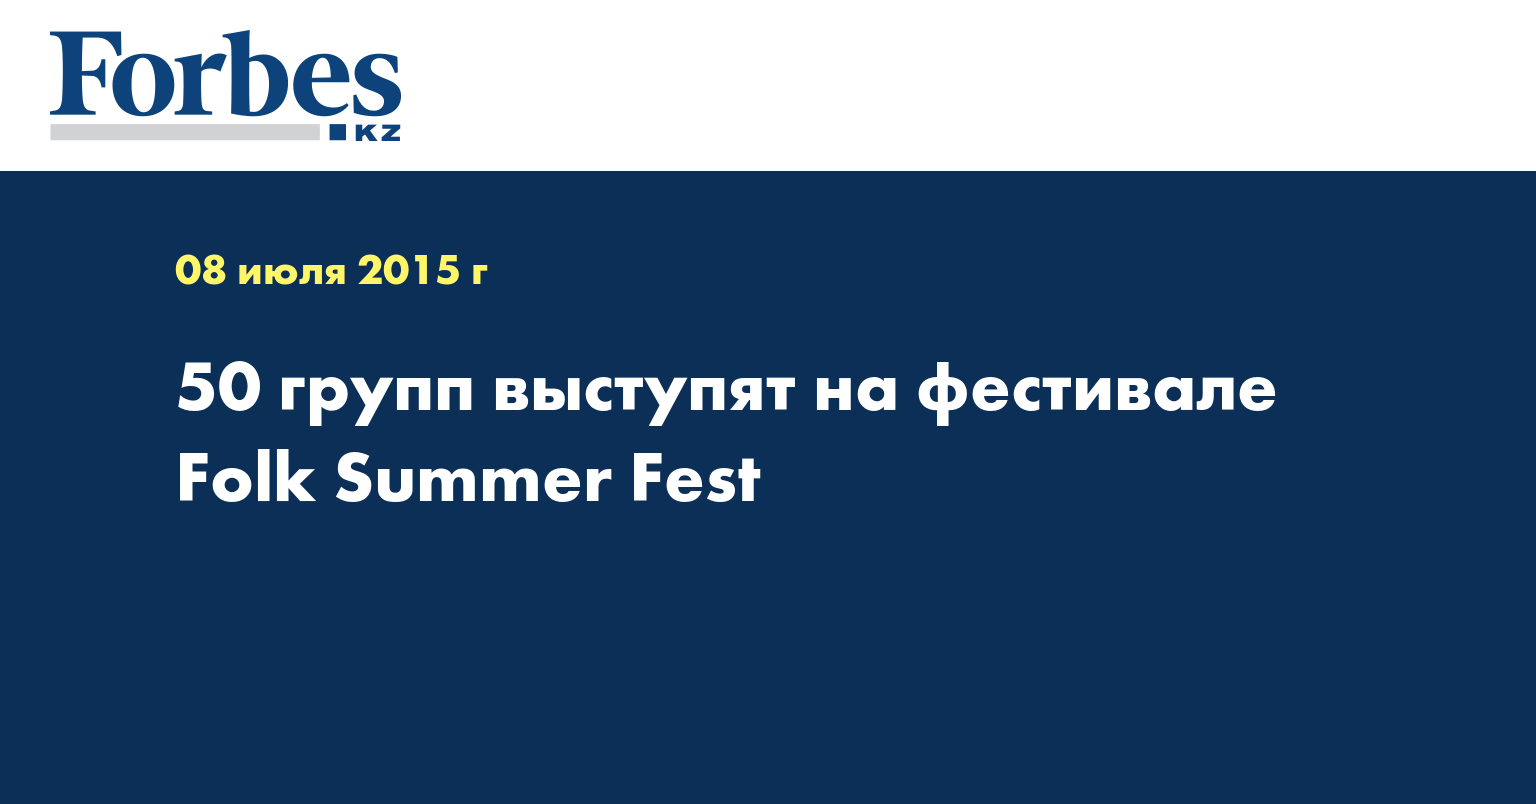 50 групп выступят на фестивале Folk Summer Fest